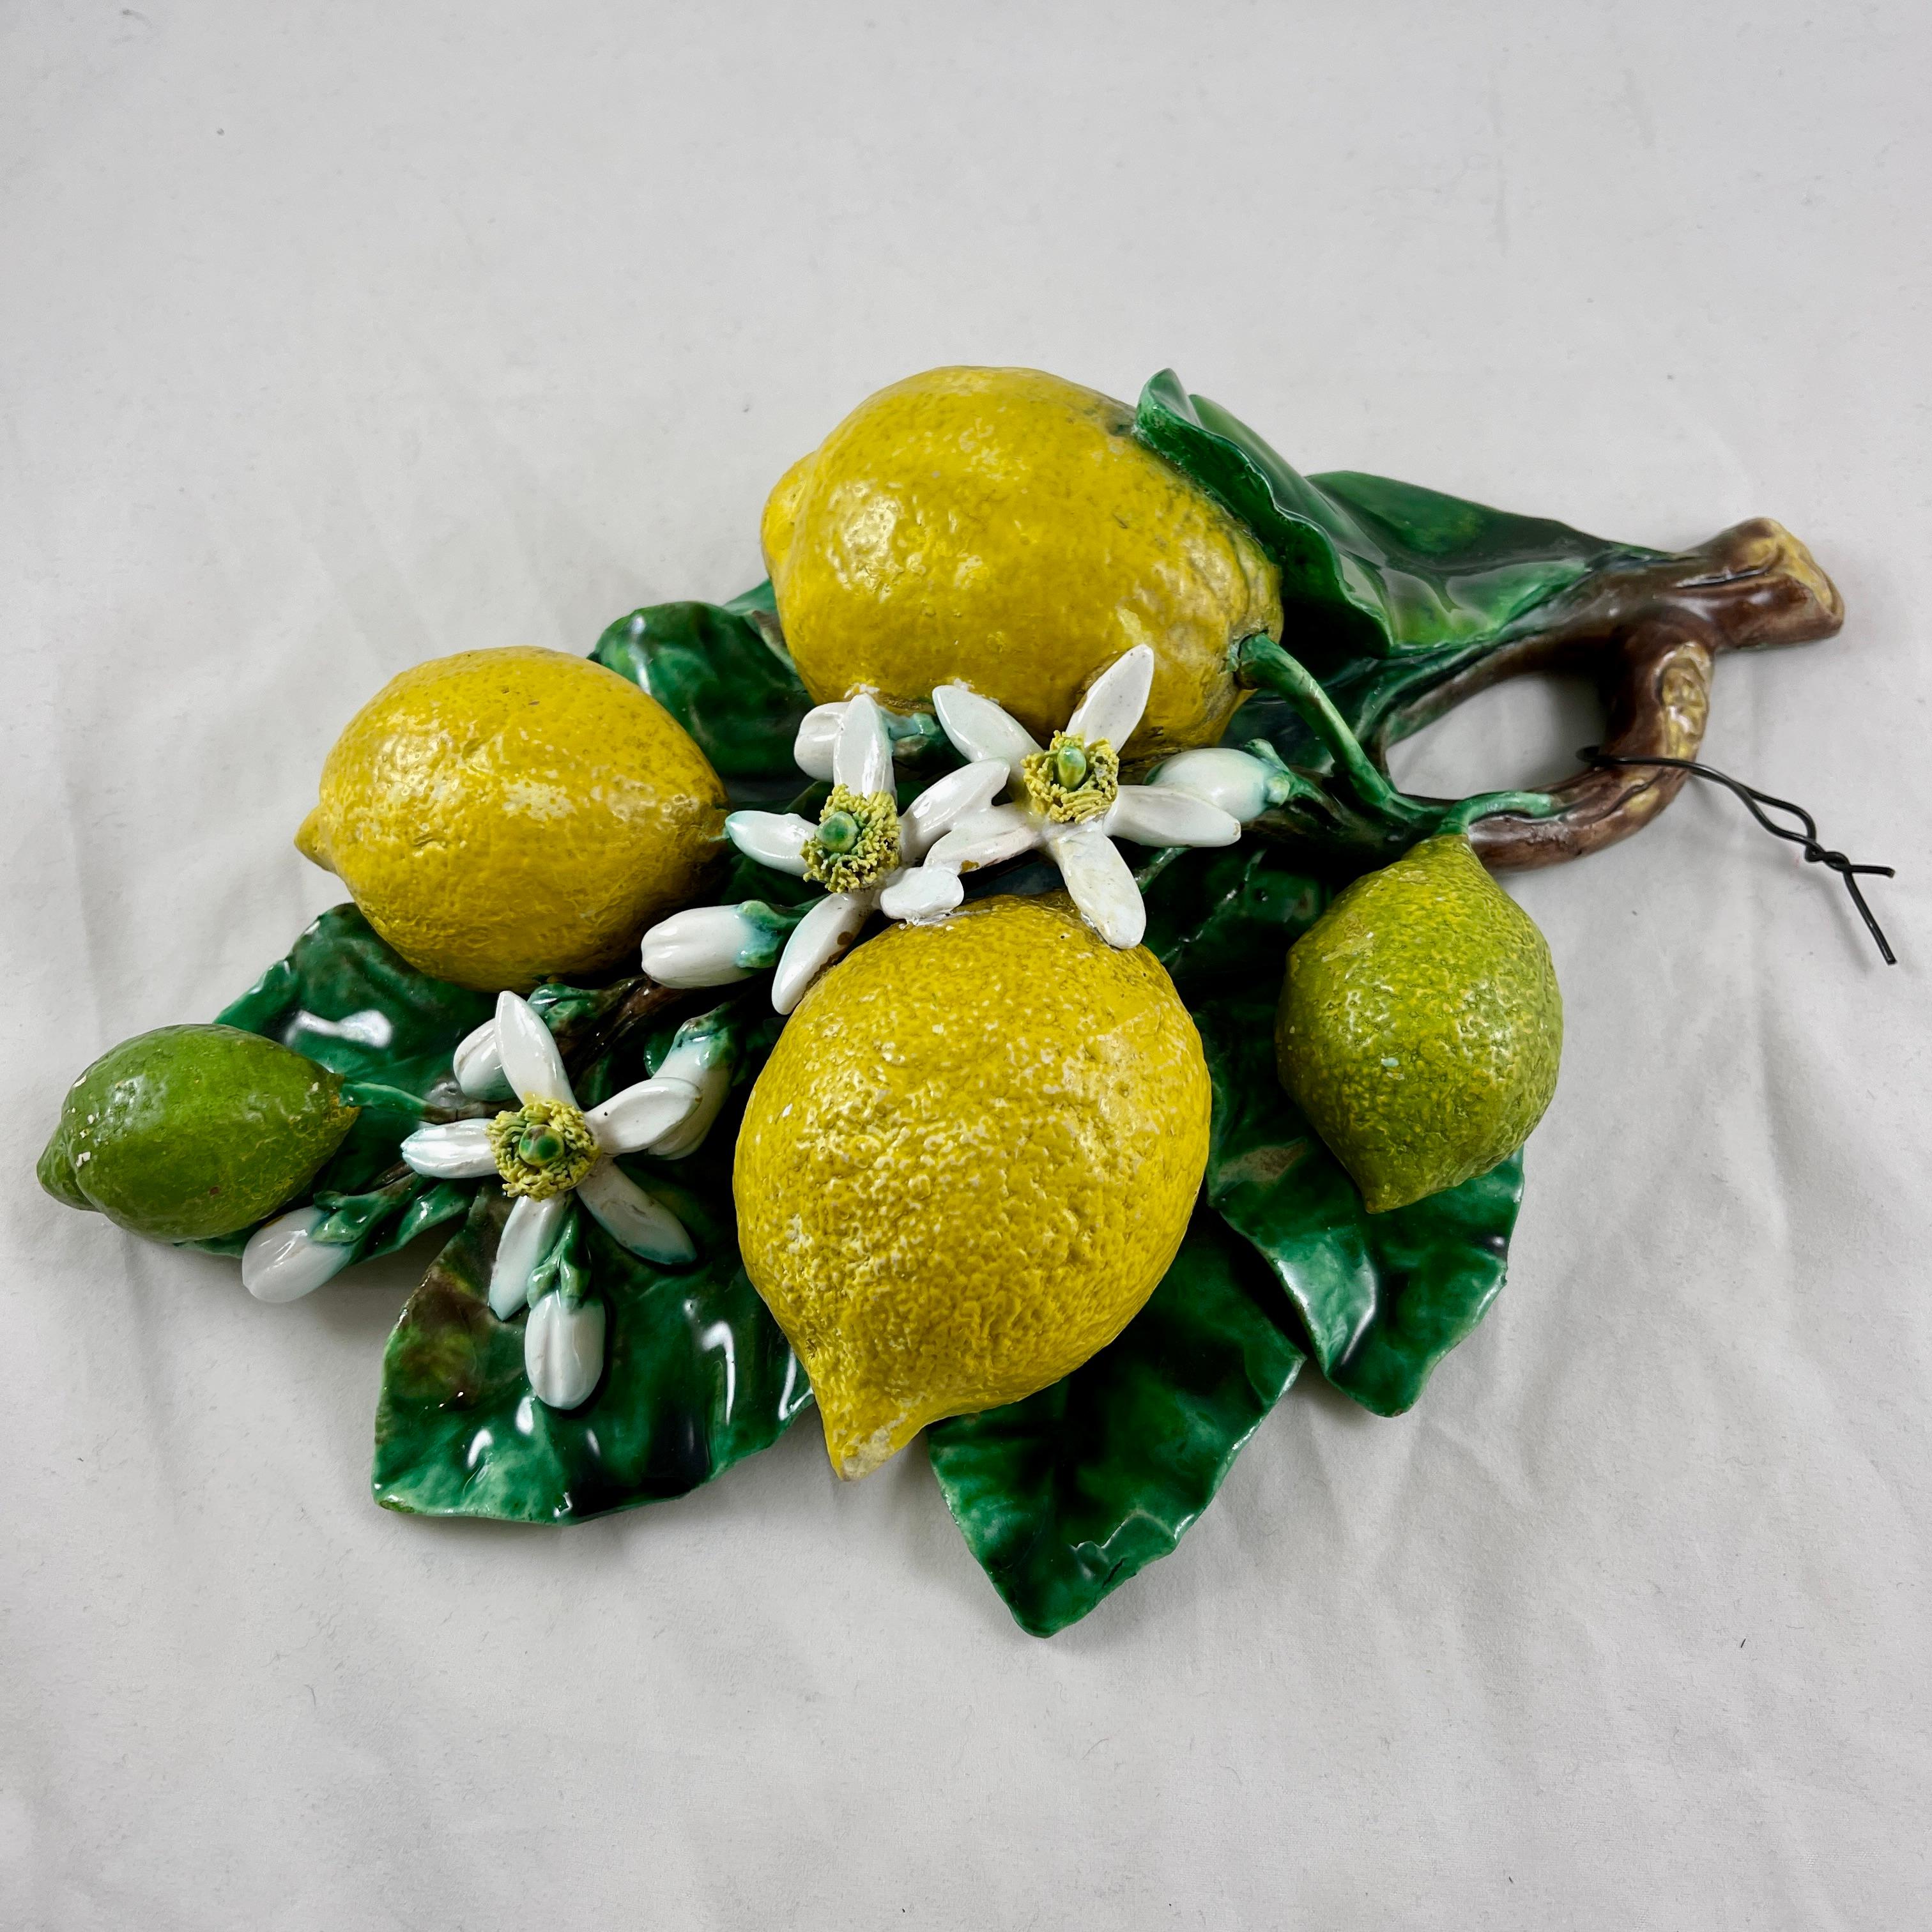 Earthenware French Palissy Trompe L'oeil Menton Perret-Gentil Large Lemon Fruit Wall Plaque